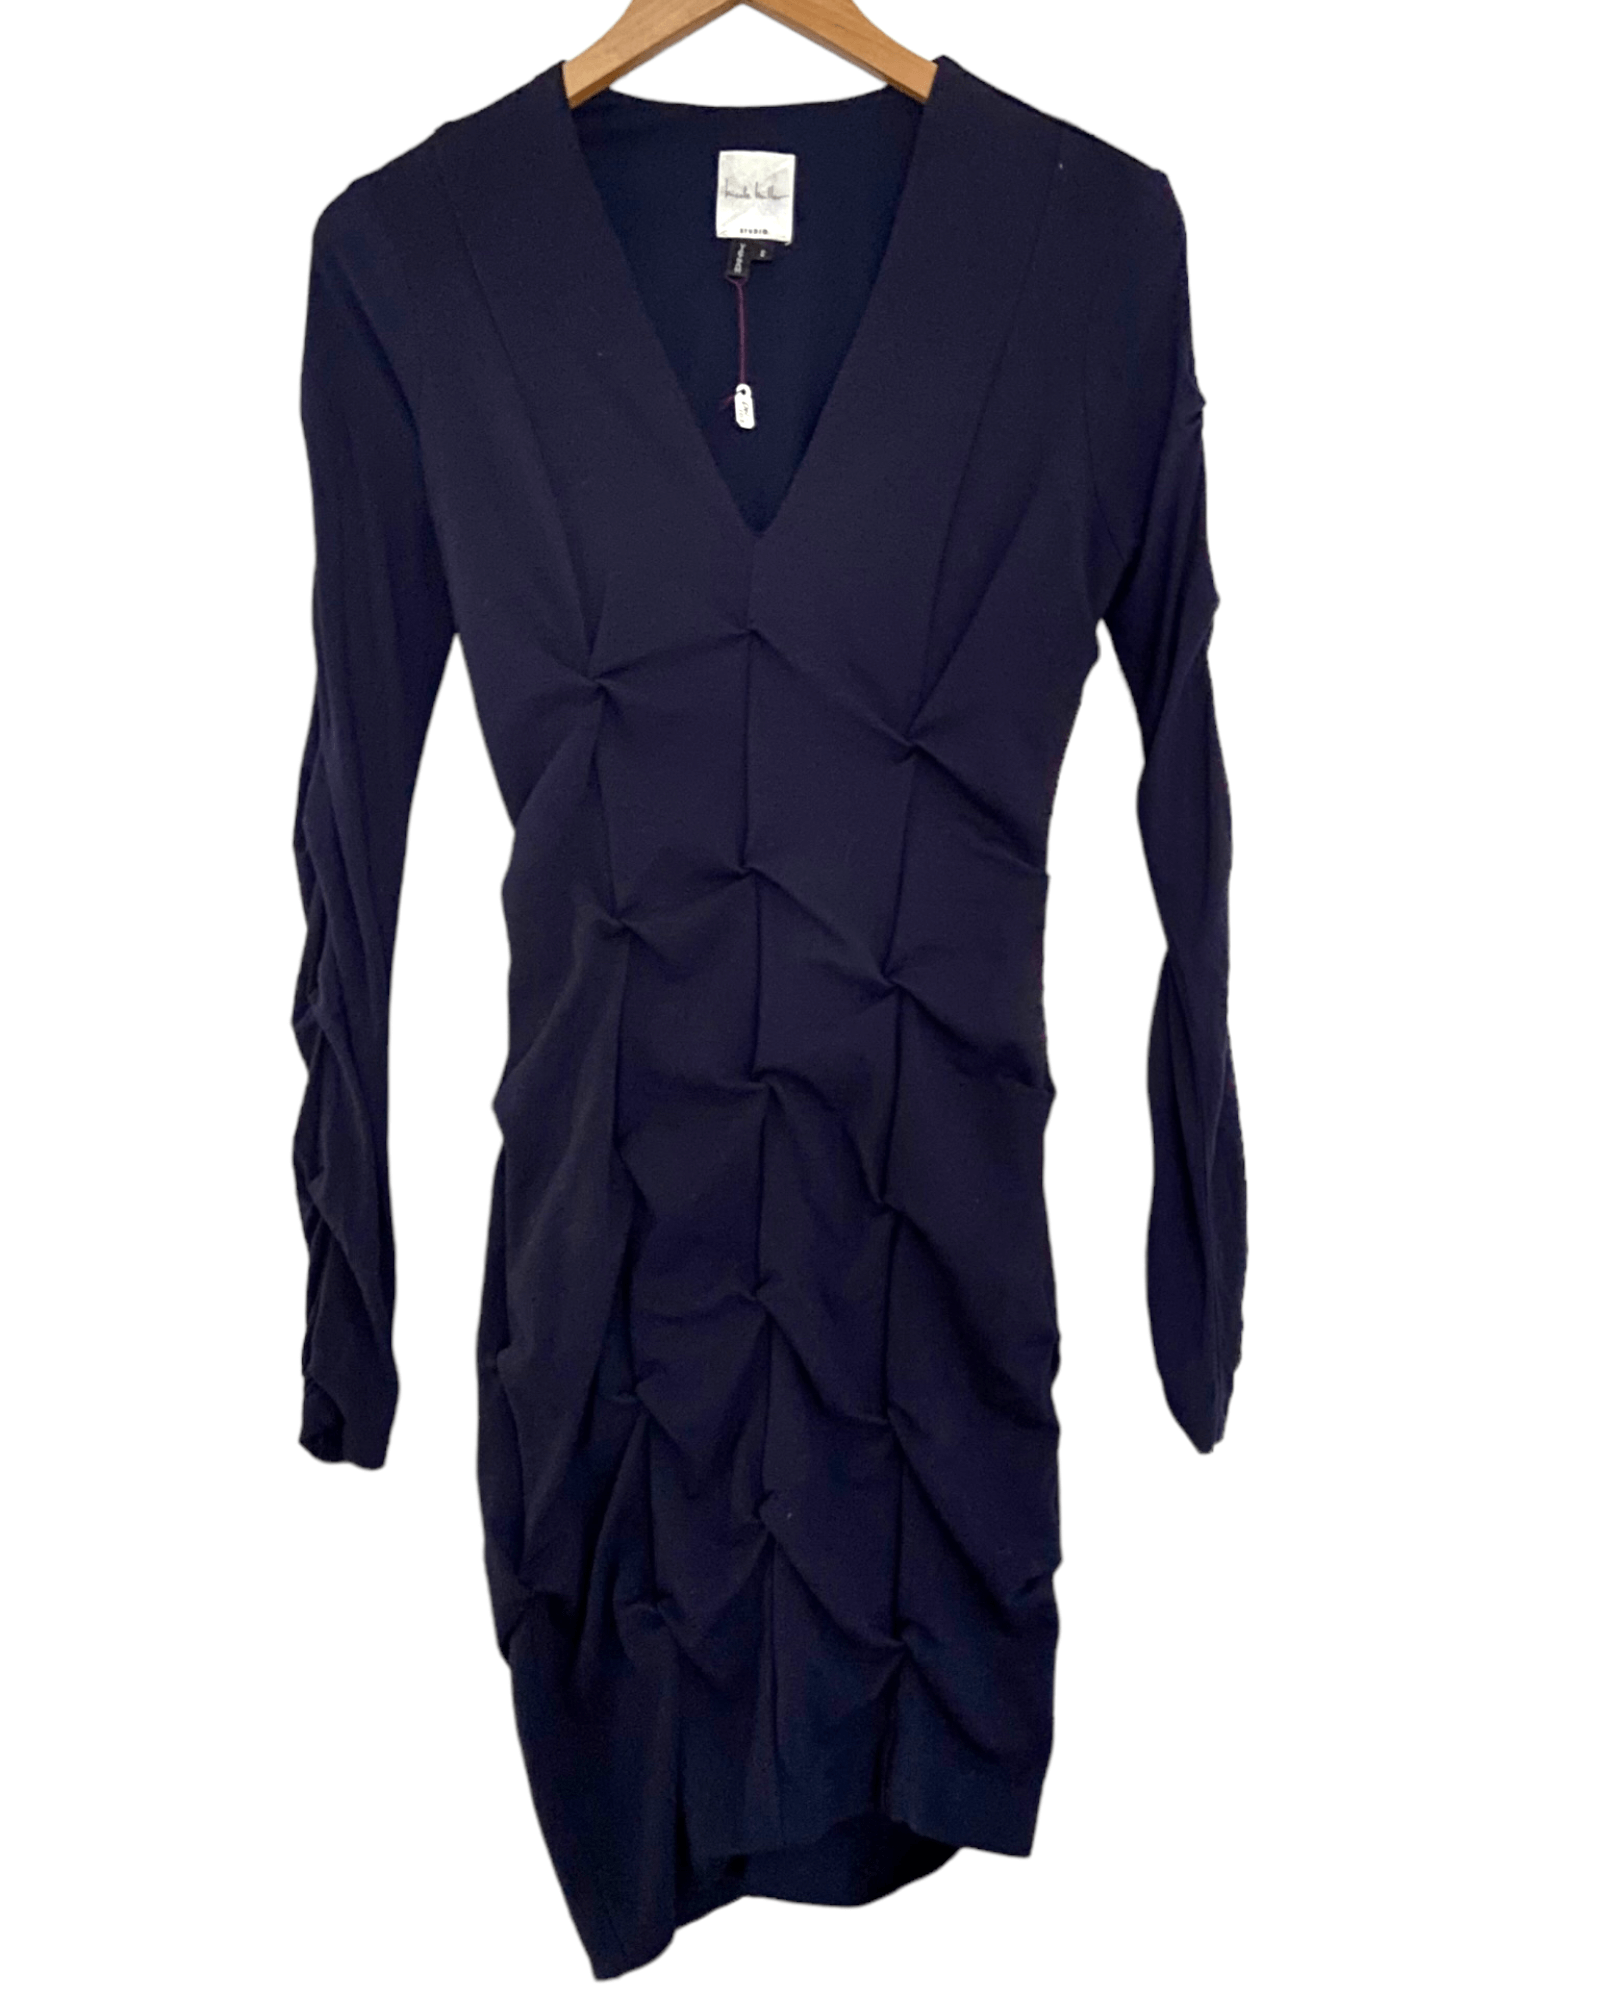 Dark Winter NICOLE MILLER navy blue twist bodycon dress